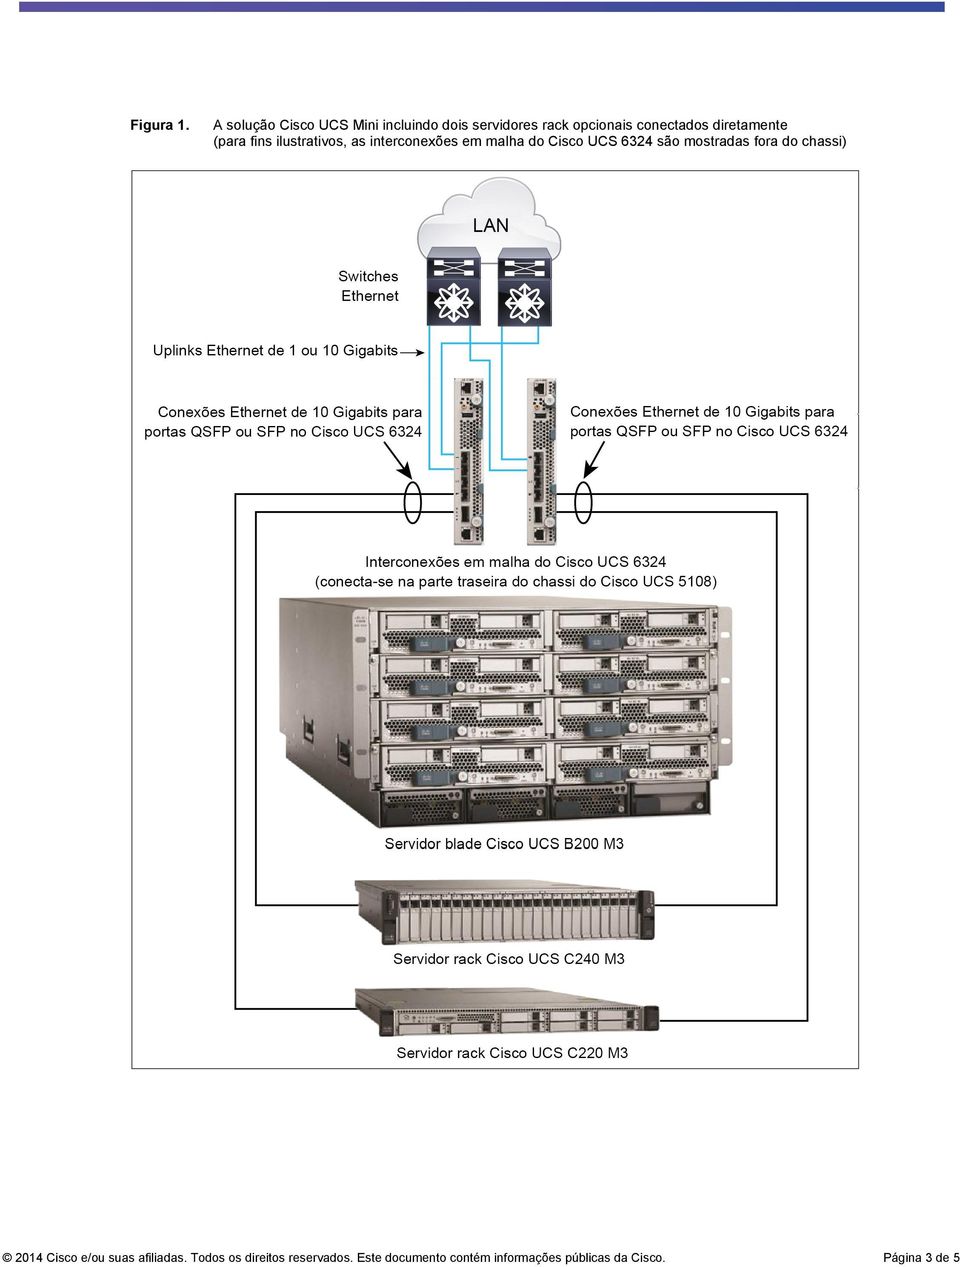 diretamente (para fins ilustrativos, as interconexões em malha do Cisco UCS 6324